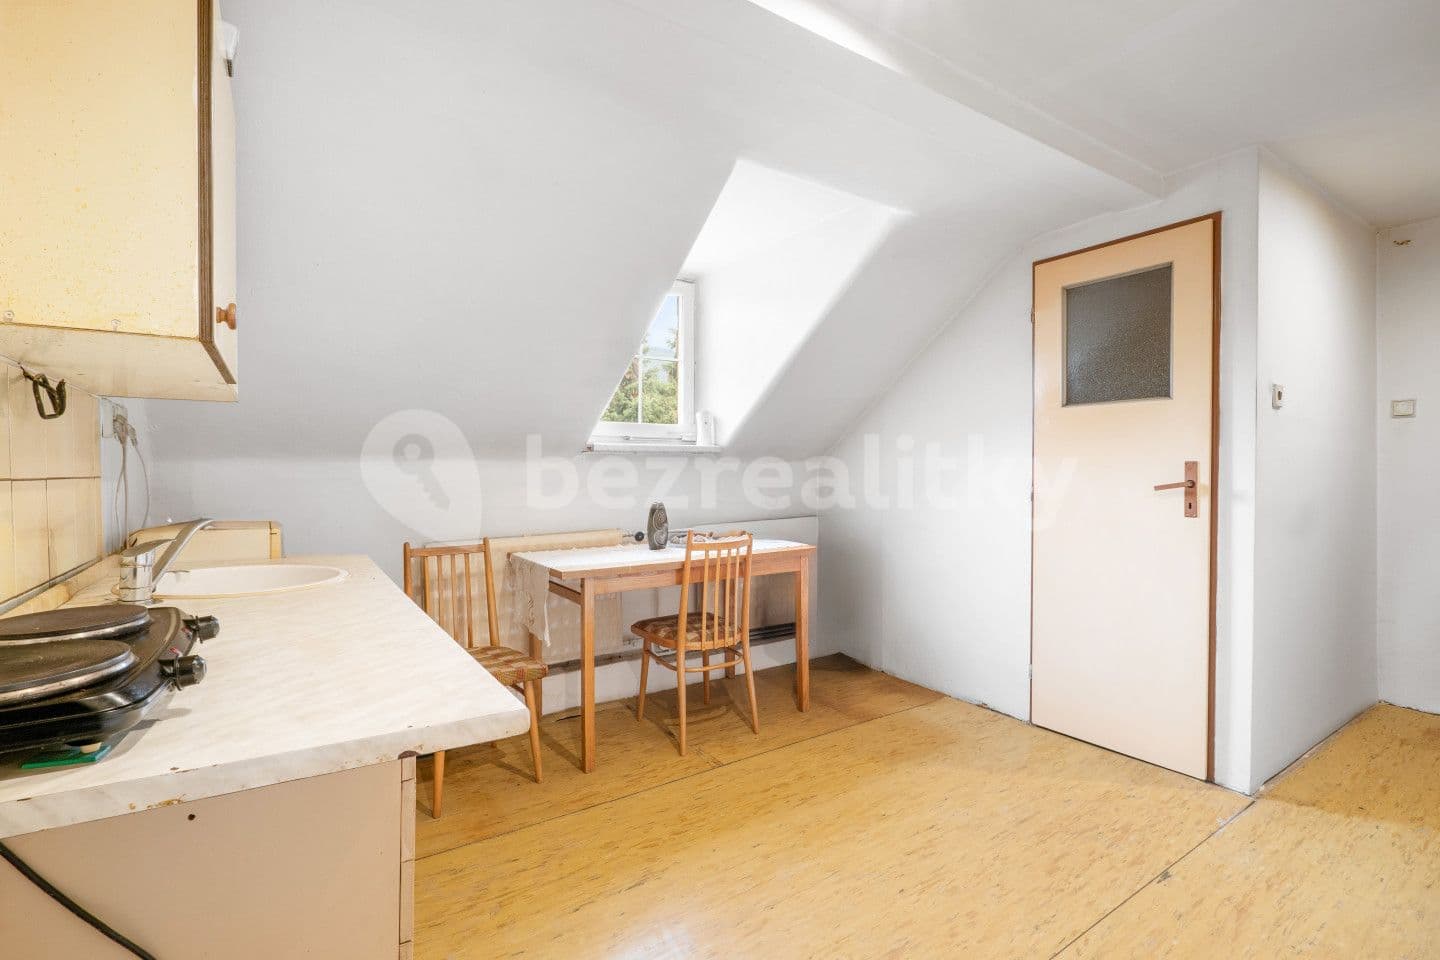 1 bedroom flat for sale, 29 m², Velké Březno, Ústecký Region